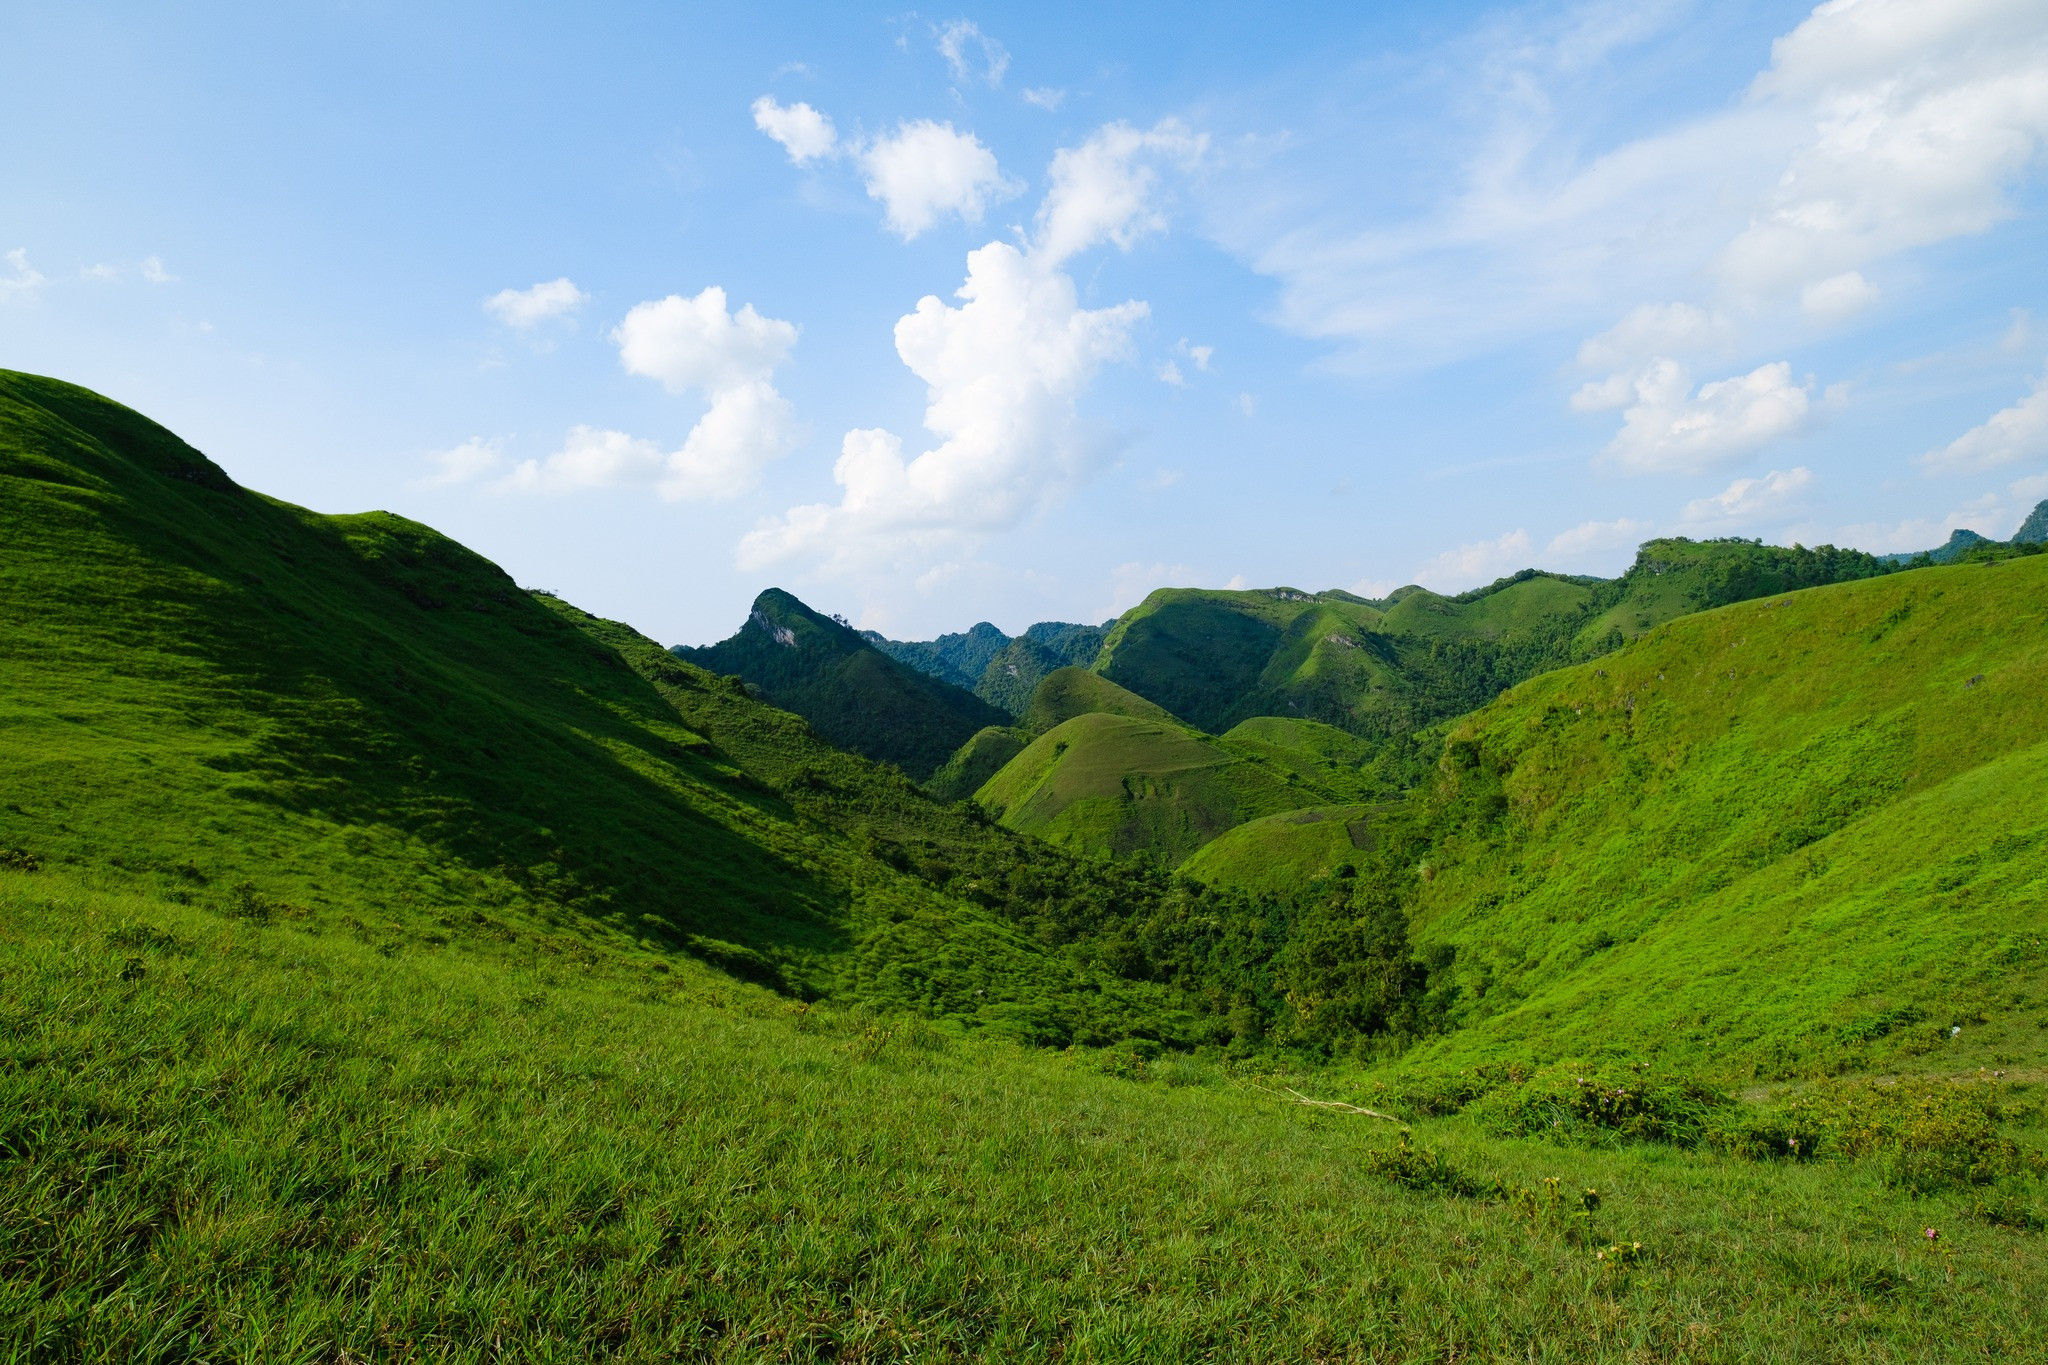 Mê mẩn đồi cỏ xanh rì, check-in siêu đẹp tại địa điểm này ở Cao Bằng- Ảnh 6.